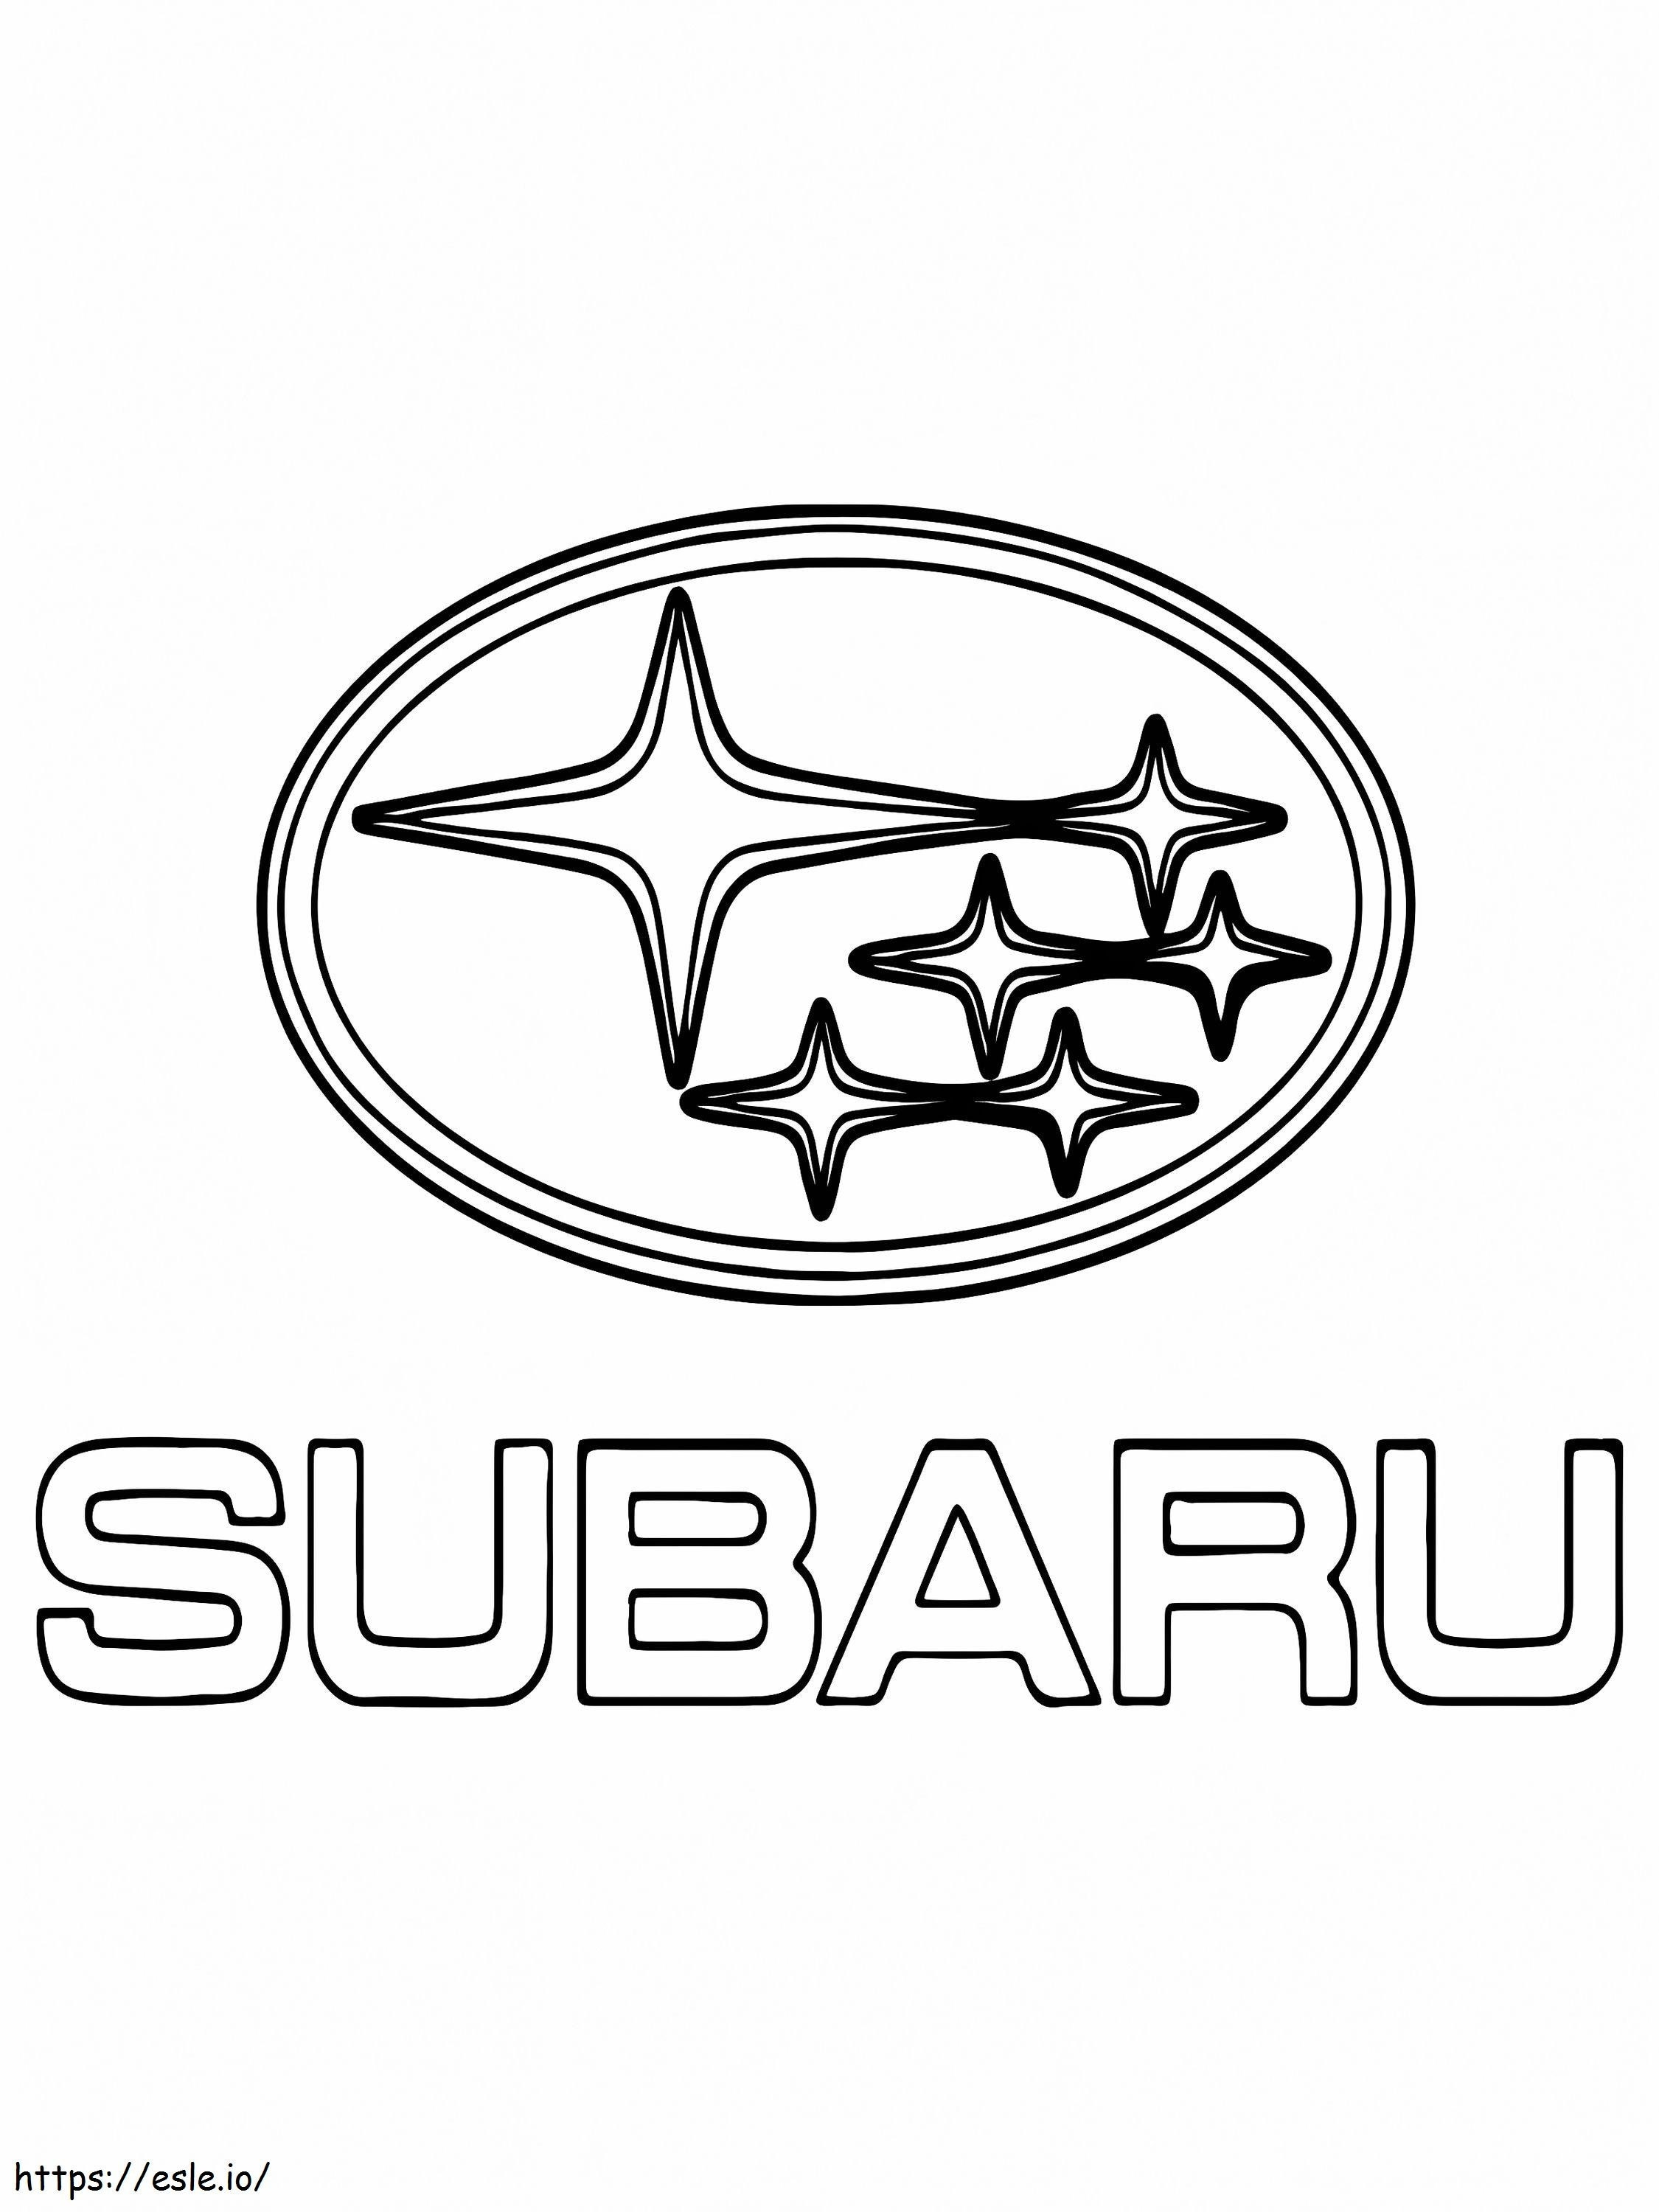 Subaru autó logó kifestő